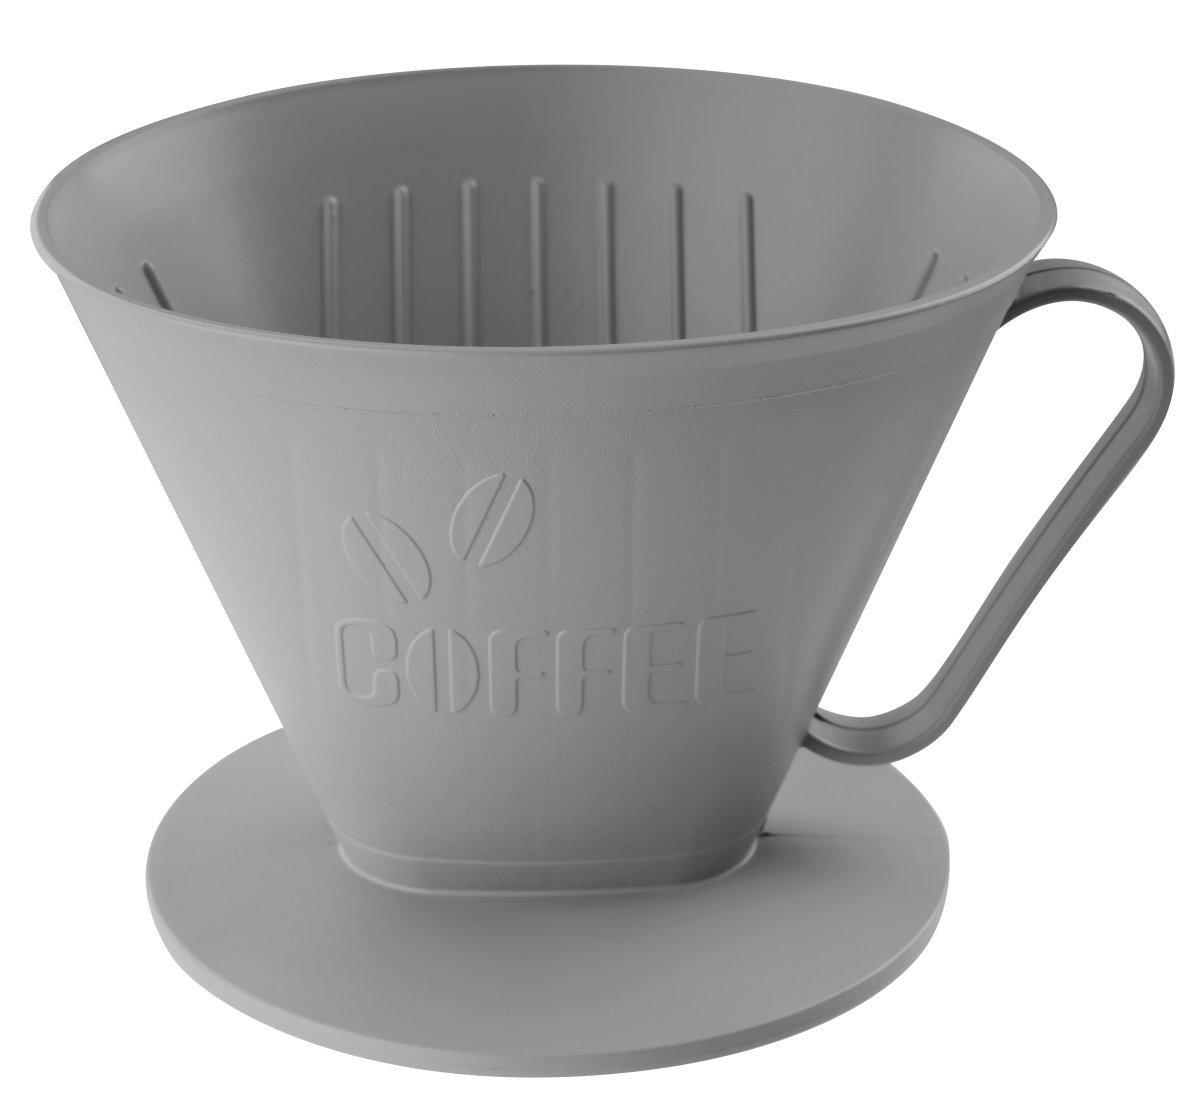 Kaffeehalter Eco Friendly in Grau online kaufen ➤ mömax